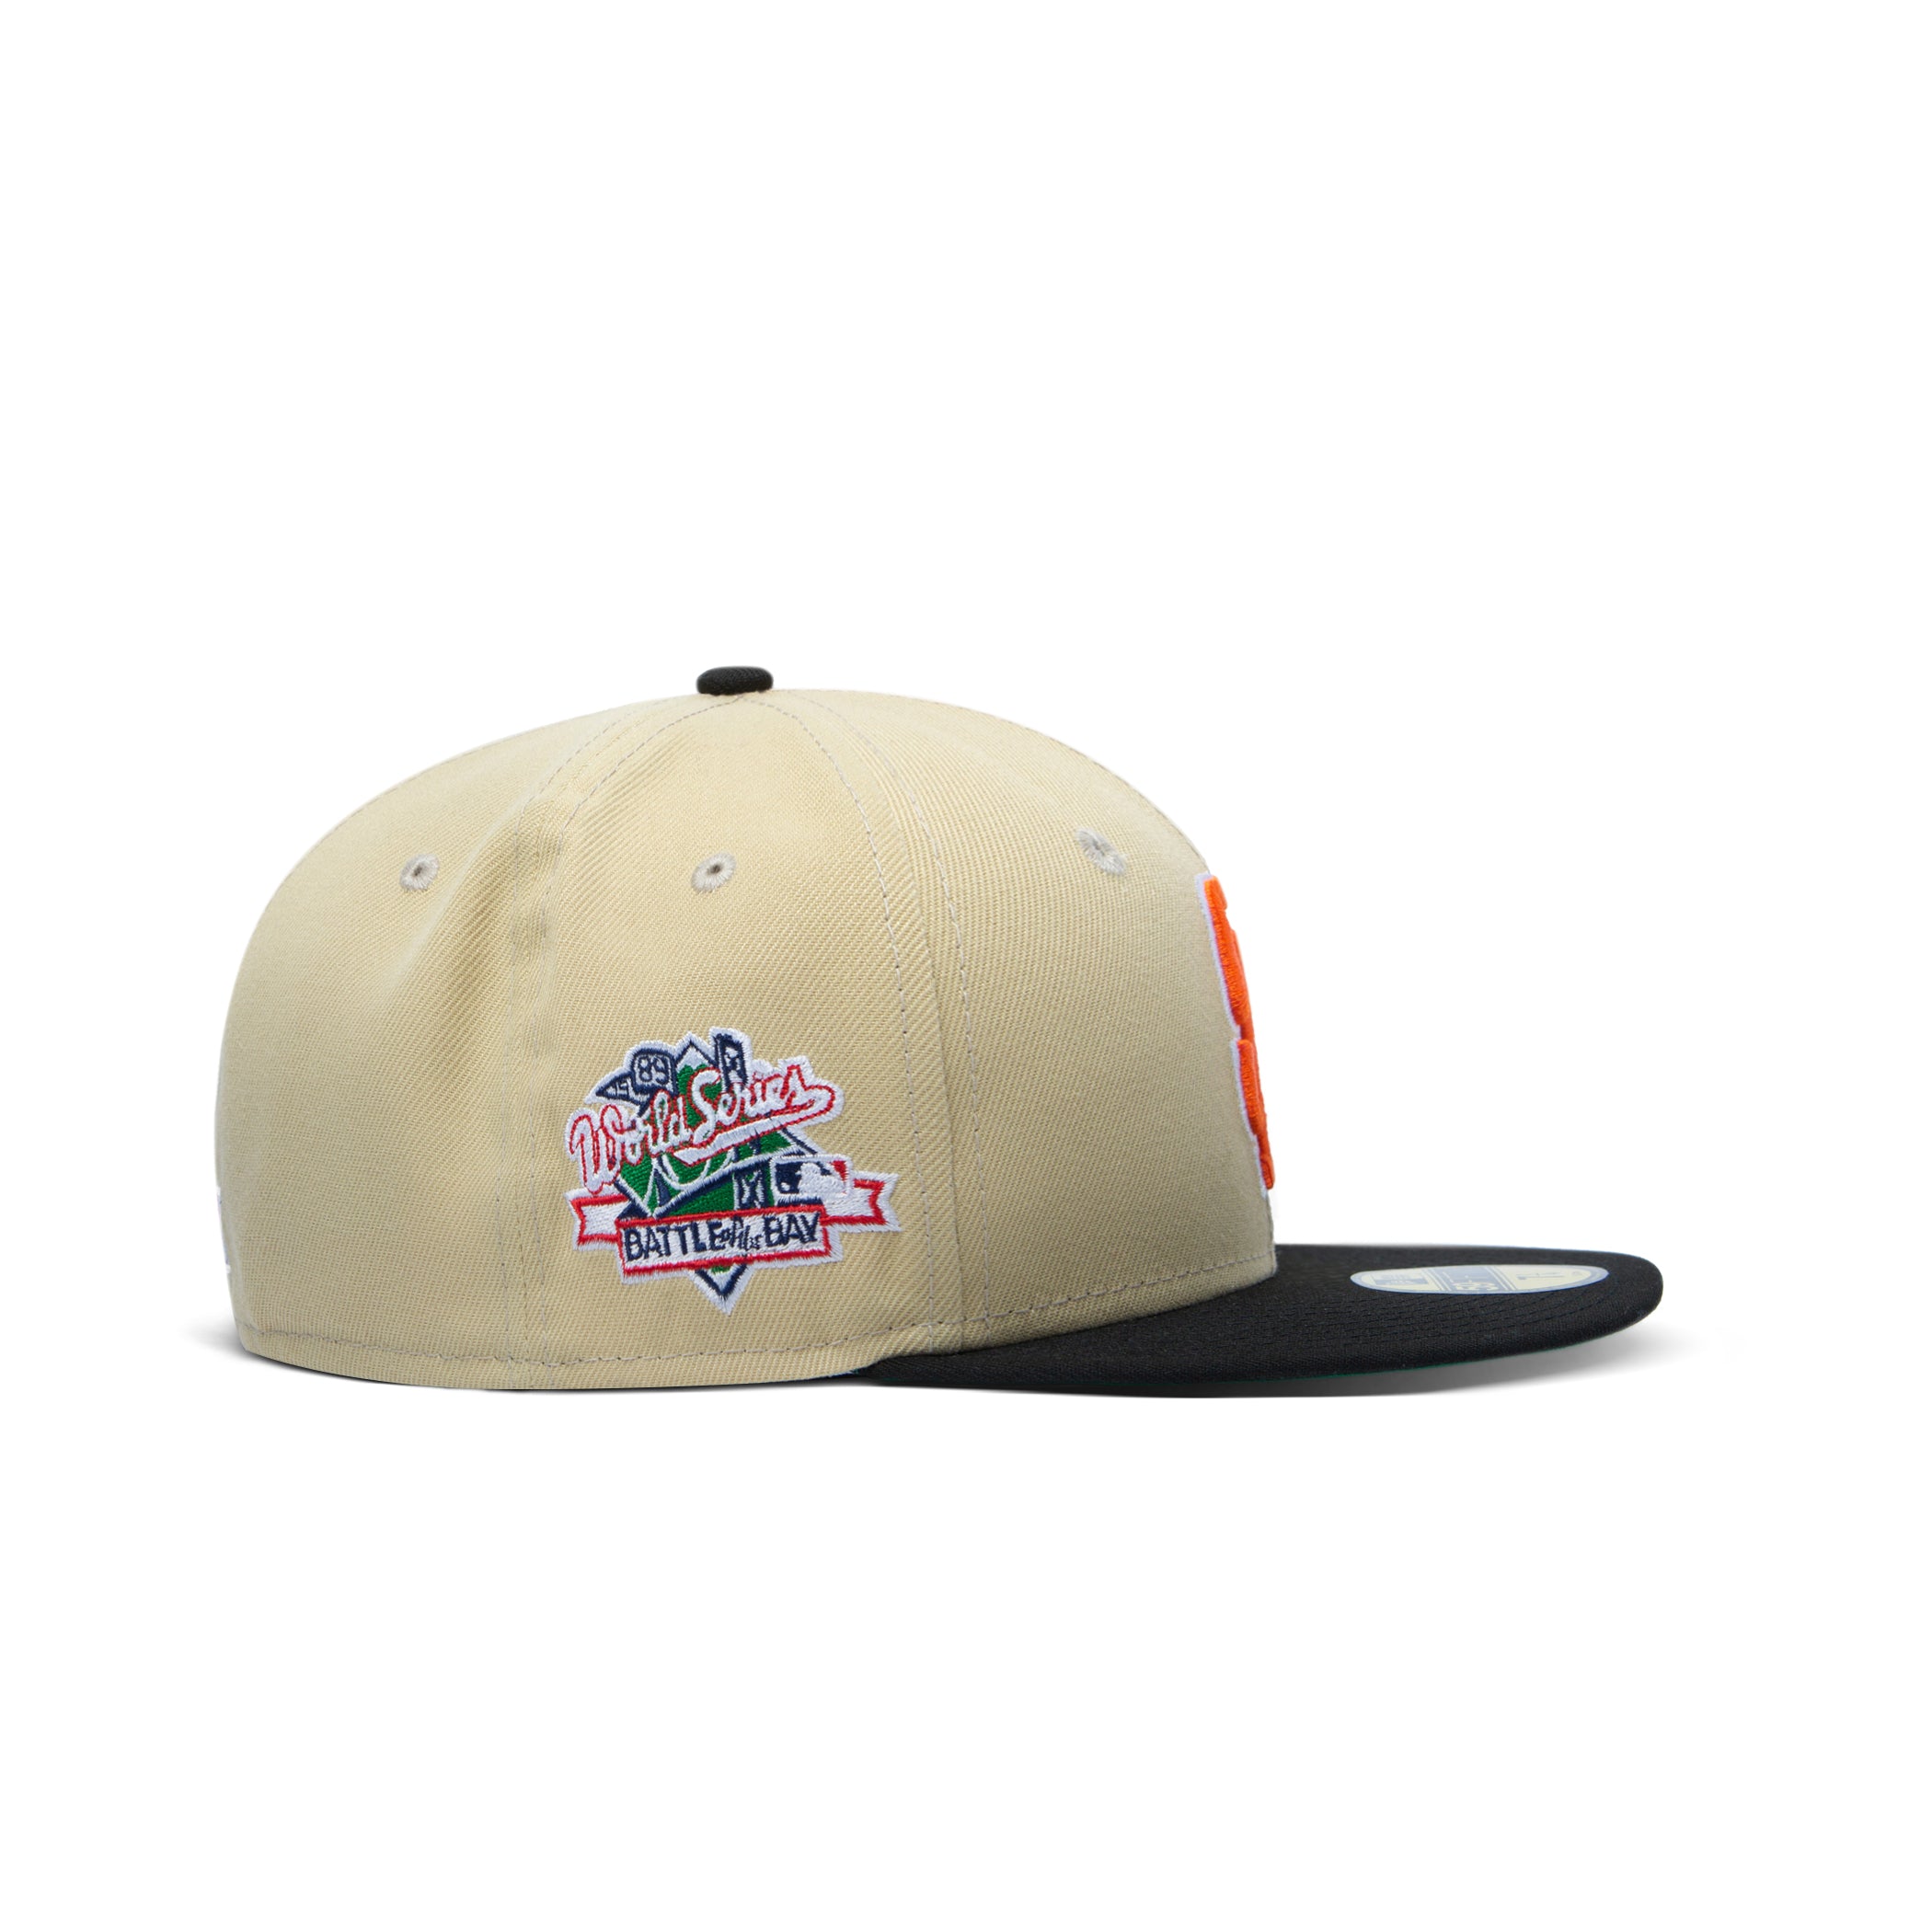 Germany New York Giants Baseball cap Headgear New Era Cap Company